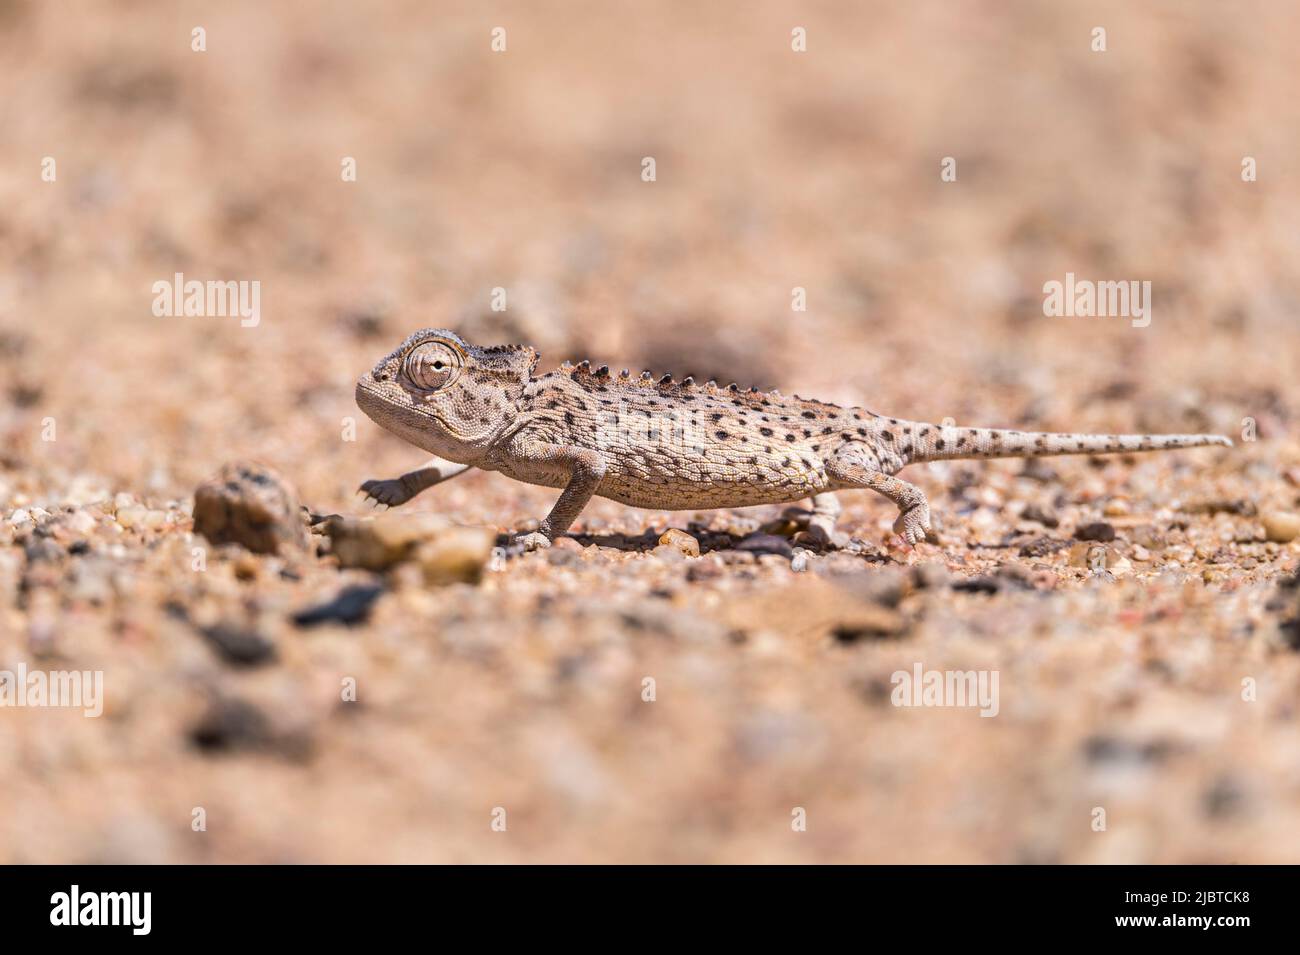 Namibia, Skeleton Coast, Erongo region, Swakopmund, Namib Desert, Namaqua Chameleon (Chamaeleo namaquensis) Stock Photo